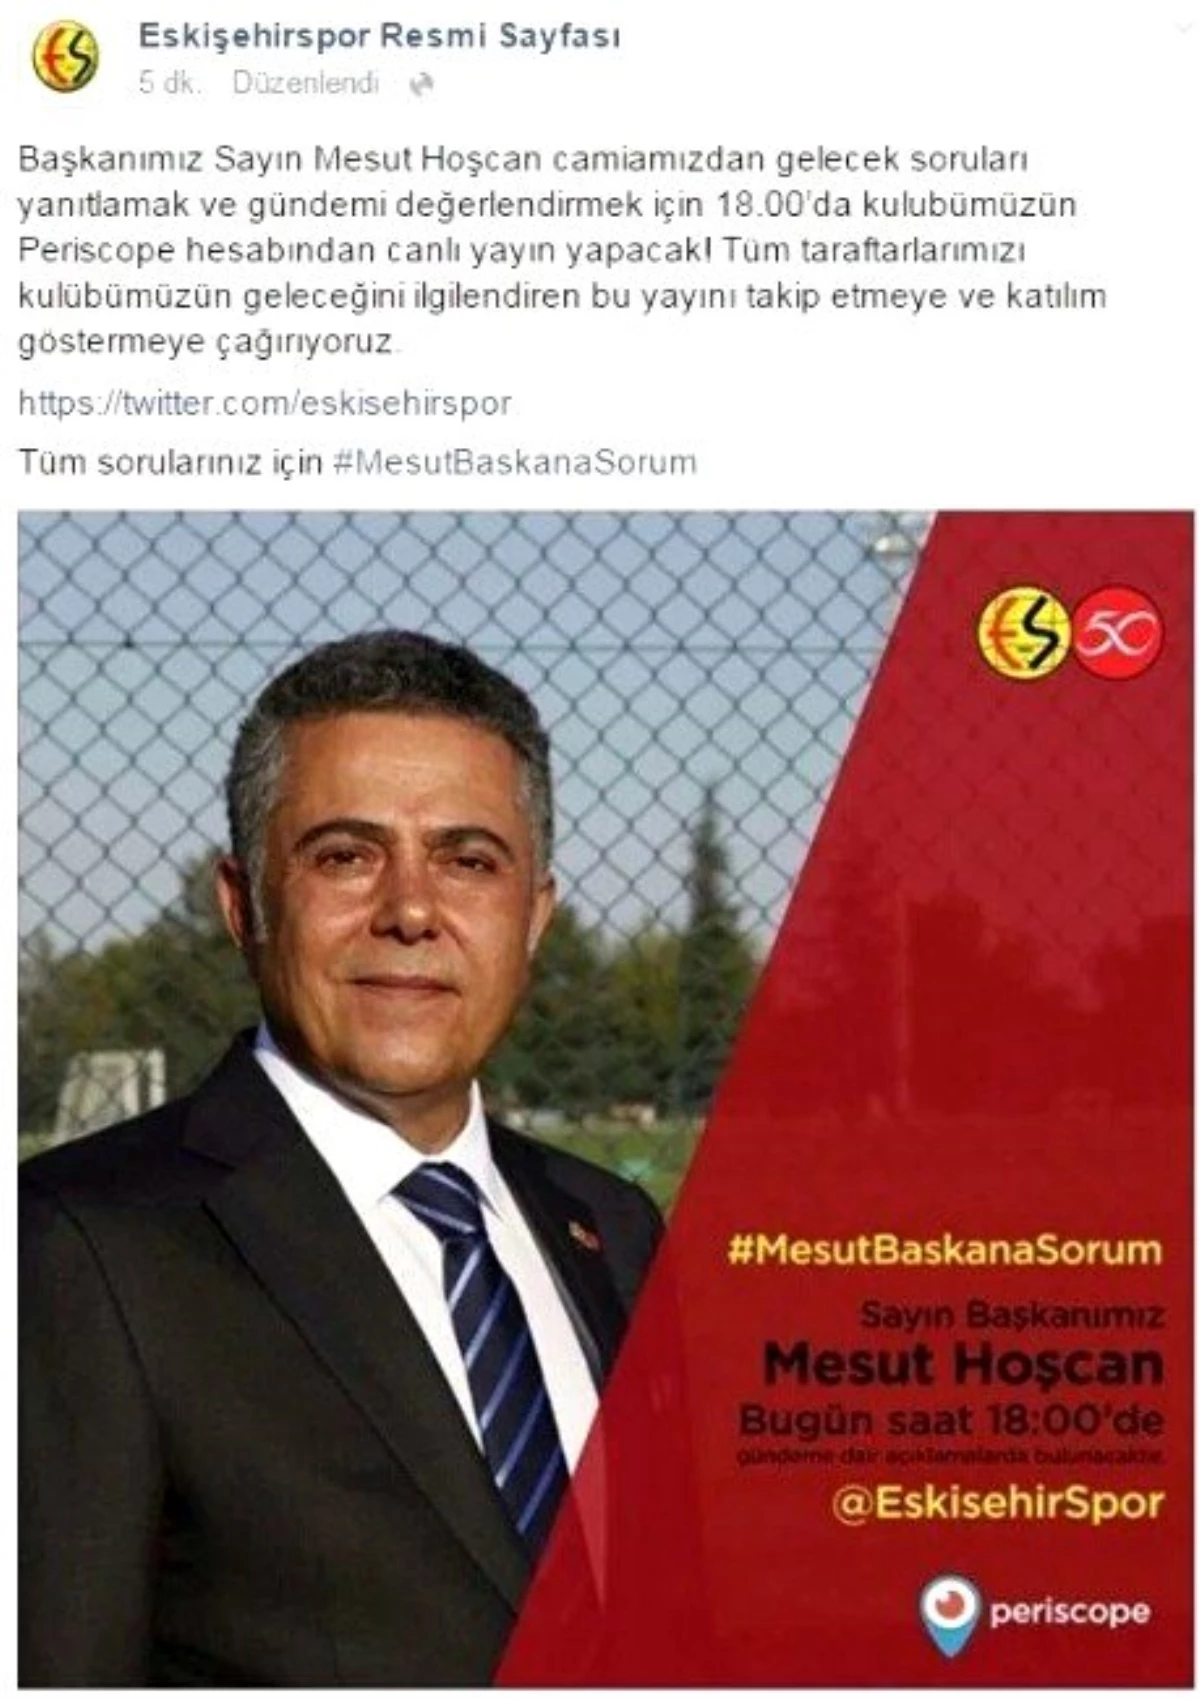 İstifaya Çağrılan Başkan Hoşcan, Canlı Yayında Taraftar ile Buluşacak